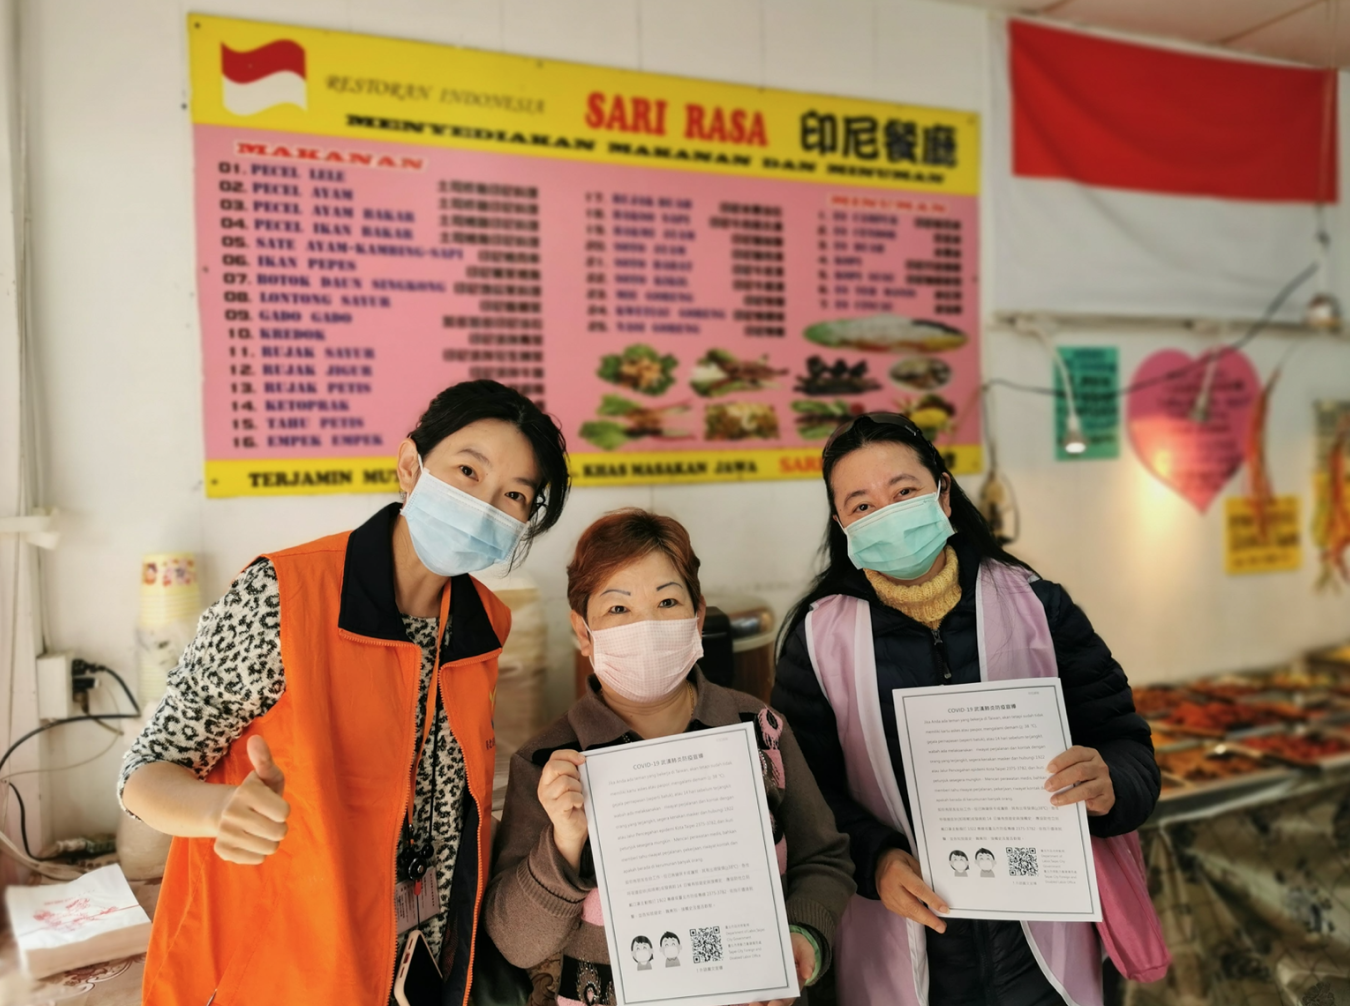 Kantor tenaga kerja Taipei menggunakan jajanan Indonesia di Stasiun Taipei untuk pindah ke toko untuk mengumumkan pencegahan epidemi. (Sumber foto: Pemerintah Kota Taipei)